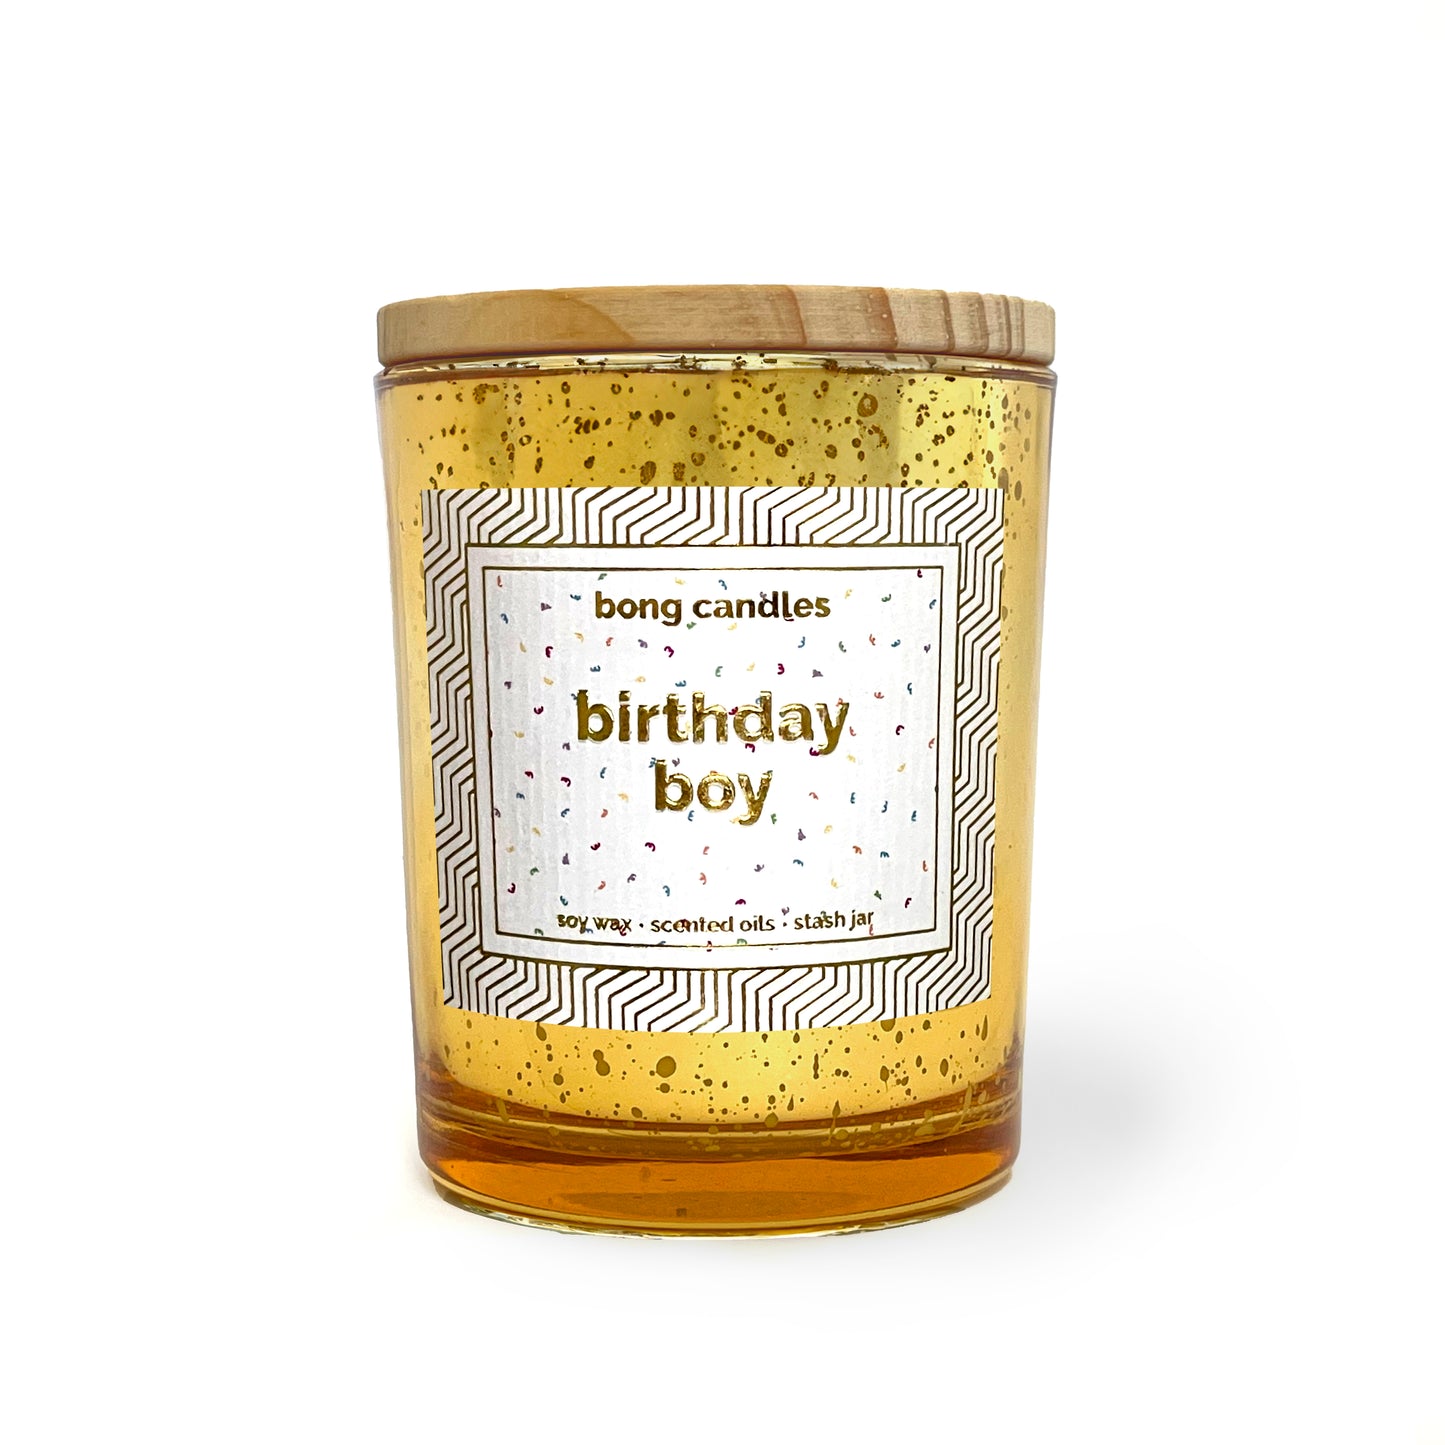 birthday boy stash jar candle, birthday girl stash jar candle, birthday stash jar candle, birthday gift, candle gifts, vanilla candle, vanilla buttercream cake scented candle, stash jar candle, upcycle